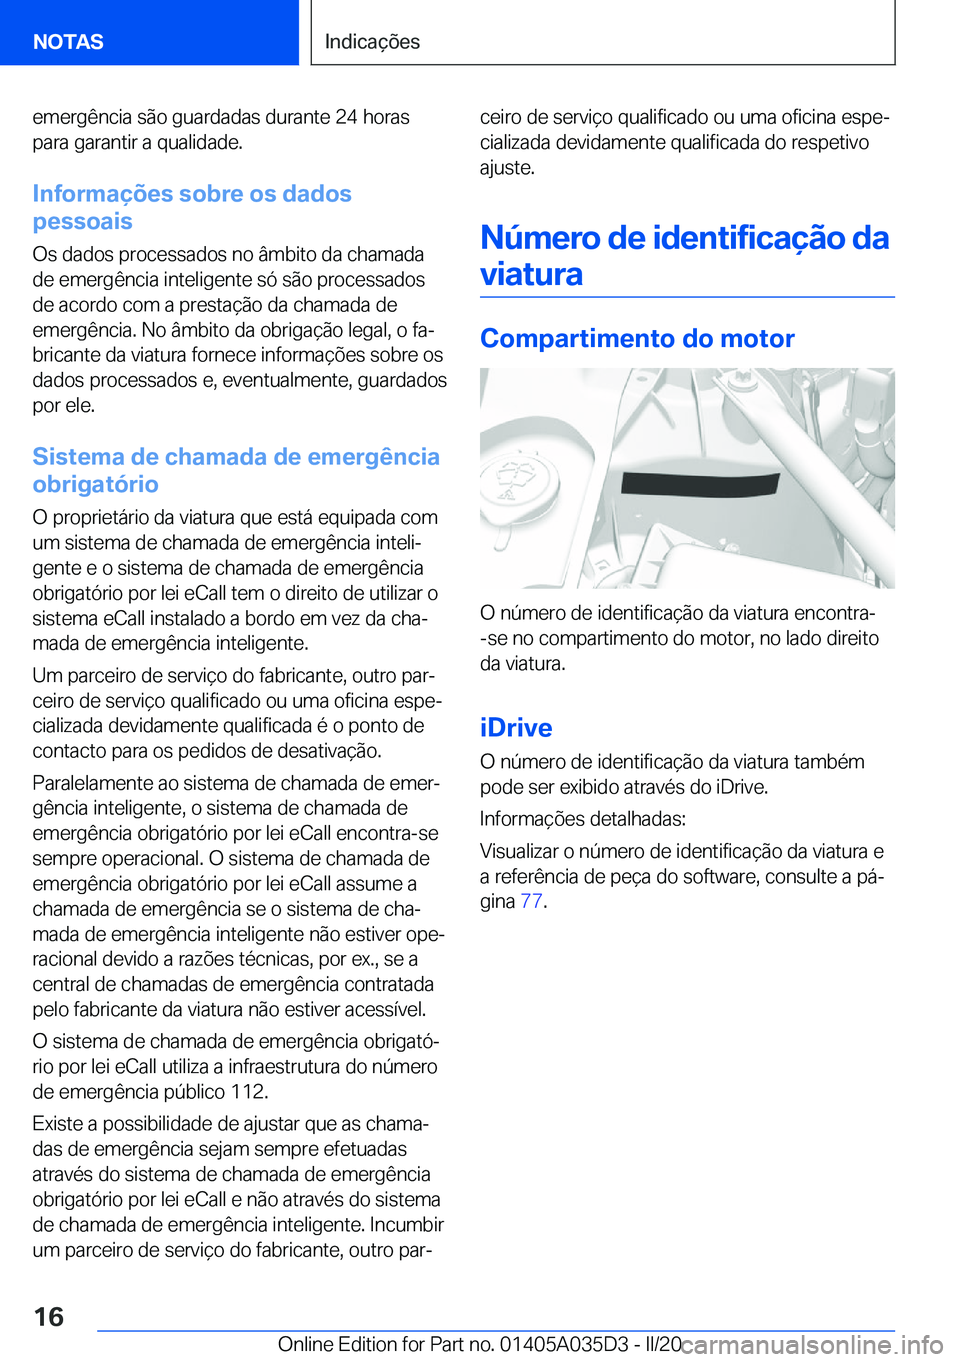 BMW X4 2020  Manual do condutor (in Portuguese) �e�m�e�r�g�ê�n�c�i�a��s�ã�o��g�u�a�r�d�a�d�a�s��d�u�r�a�n�t�e��2�4��h�o�r�a�s�p�a�r�a��g�a�r�a�n�t�i�r��a��q�u�a�l�i�d�a�d�e�.
�I�n�f�o�r�m�a�